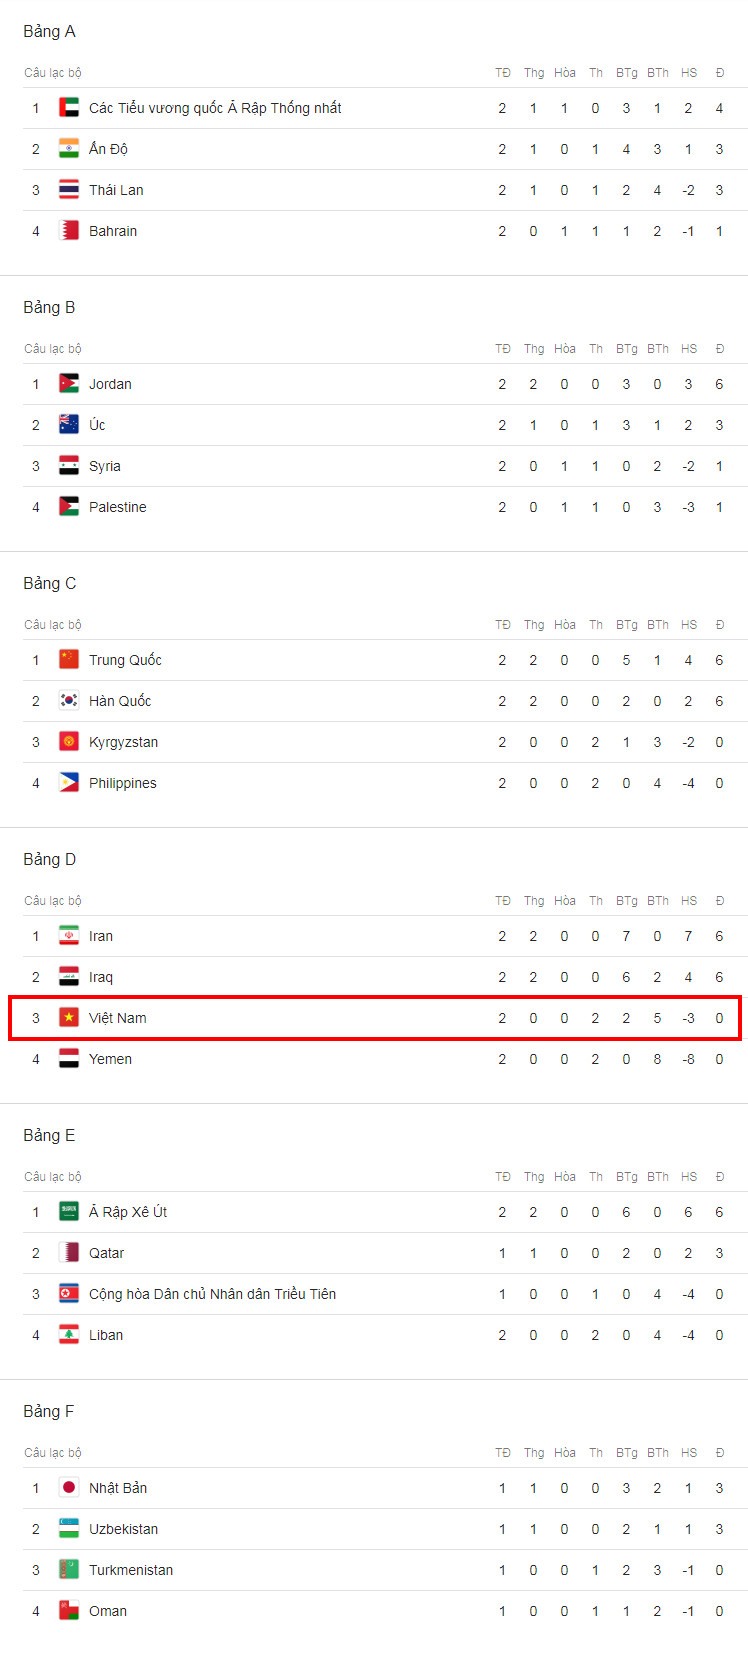 Tuyển Việt Nam bật khỏi top 4 đội xếp thứ 3 có thành tích tốt nhất.